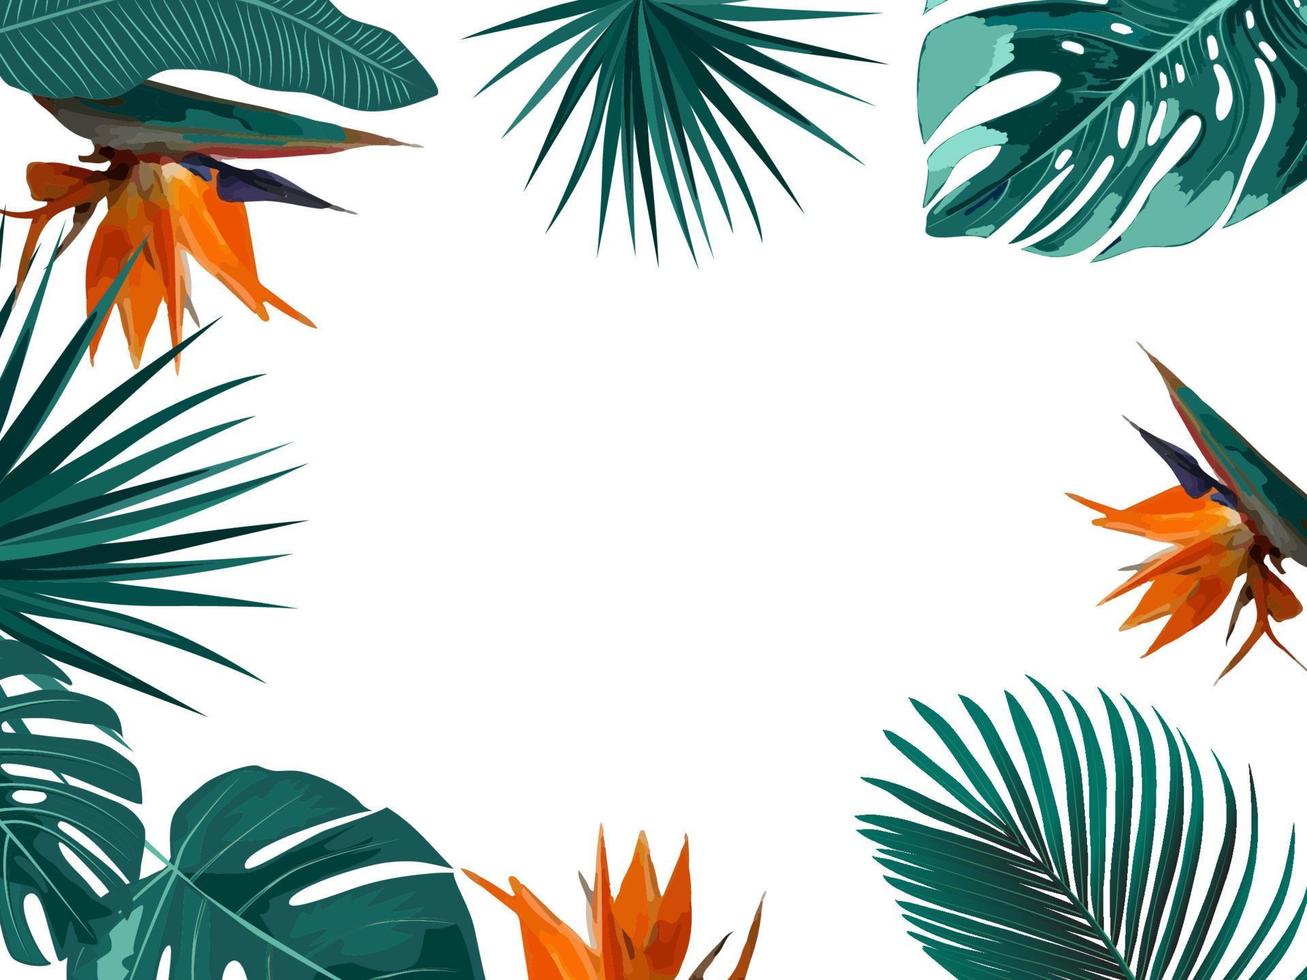 Vektor tropischer Dschungelrahmen mit Palmen, Blumen und Blättern auf weißem Hintergrund